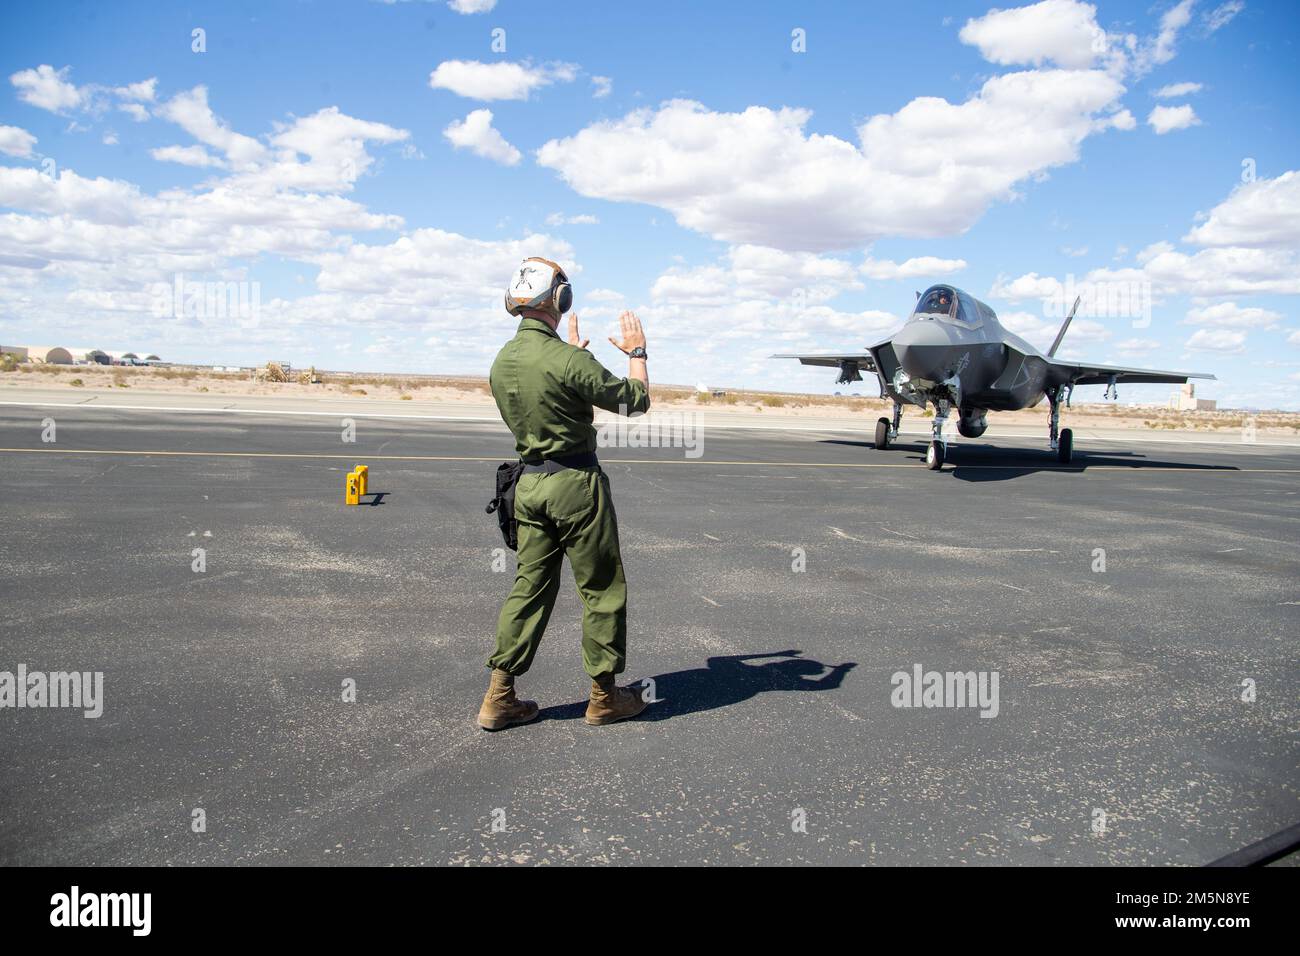 NEGLI STATI UNITI Corpo marino F-35B Lightning II assegnato a Marine Aviation Weapons and Tactics Squadron One (MAWTS-1), taxi prima di un rifornimento di terra durante il corso Weapons and Tactics Instructor (WTI) 2-22, presso il Laguna Army Airfield, Yuma, Arizona, 29 marzo 2022. WTI è un evento di formazione di sette settimane ospitato da MAWTS-1, che fornisce formazione tattica avanzata standardizzata e certificazione delle qualifiche di istruttore di unità per supportare la formazione e la preparazione dell'aviazione marina, e aiuta a sviluppare e utilizzare armi e tattiche per l'aviazione. Foto Stock